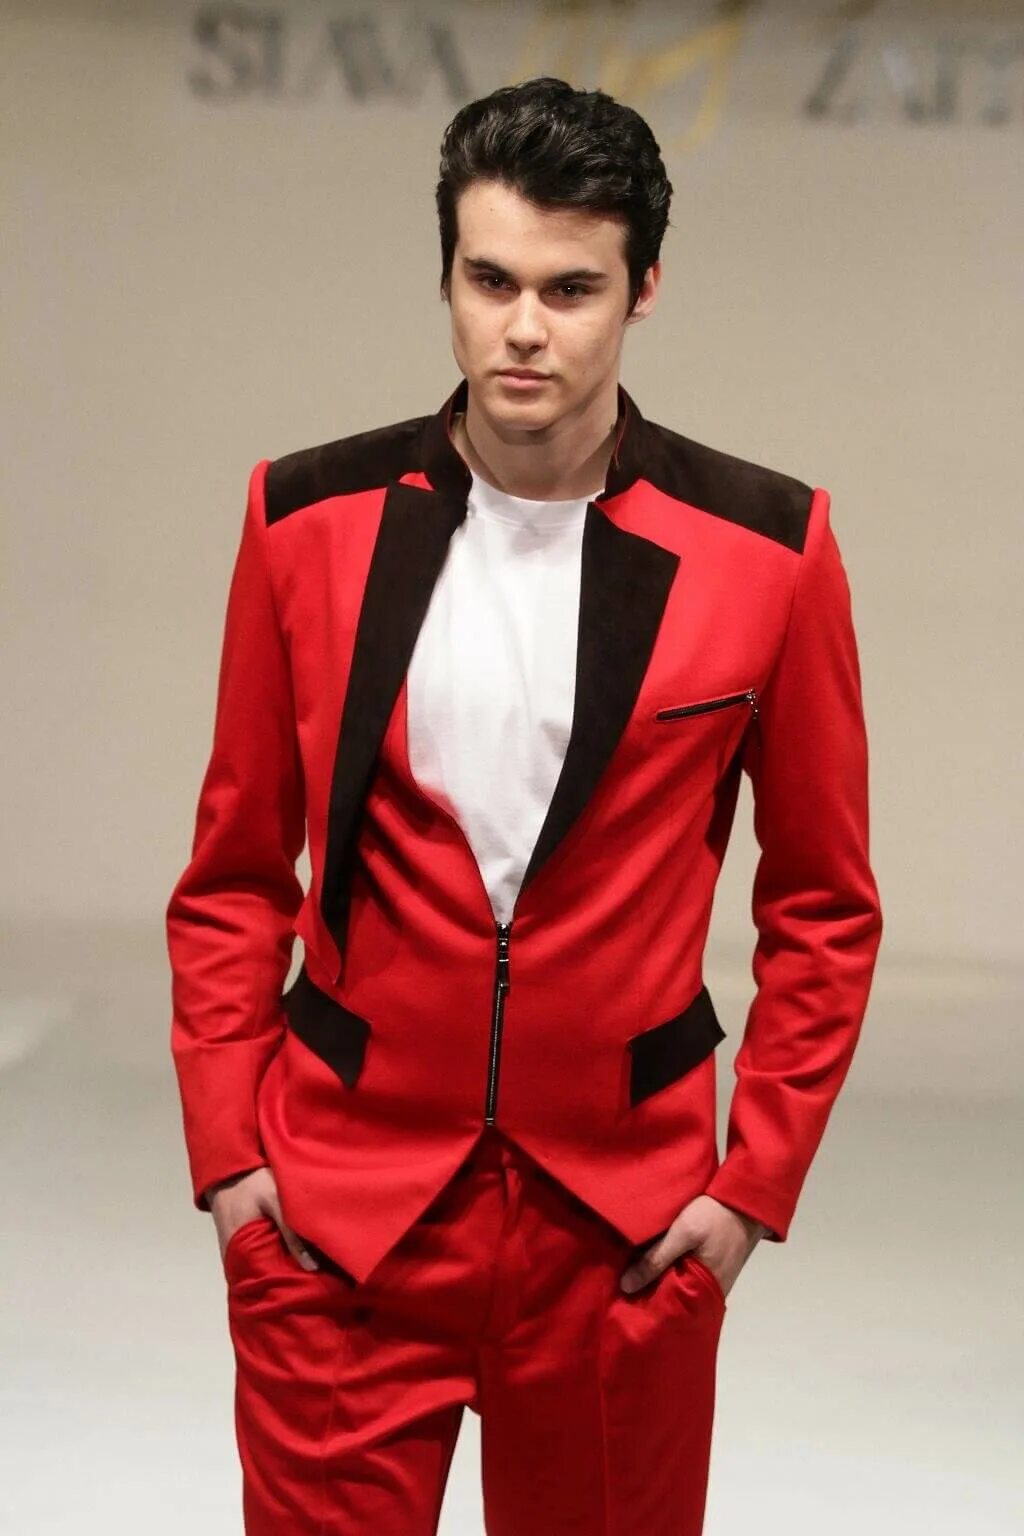 Красная мужская форма. Мужчина в Красном костюме. Необычные мужские костюмы. Красный костюм мужской классический. Красная одежда мужская.